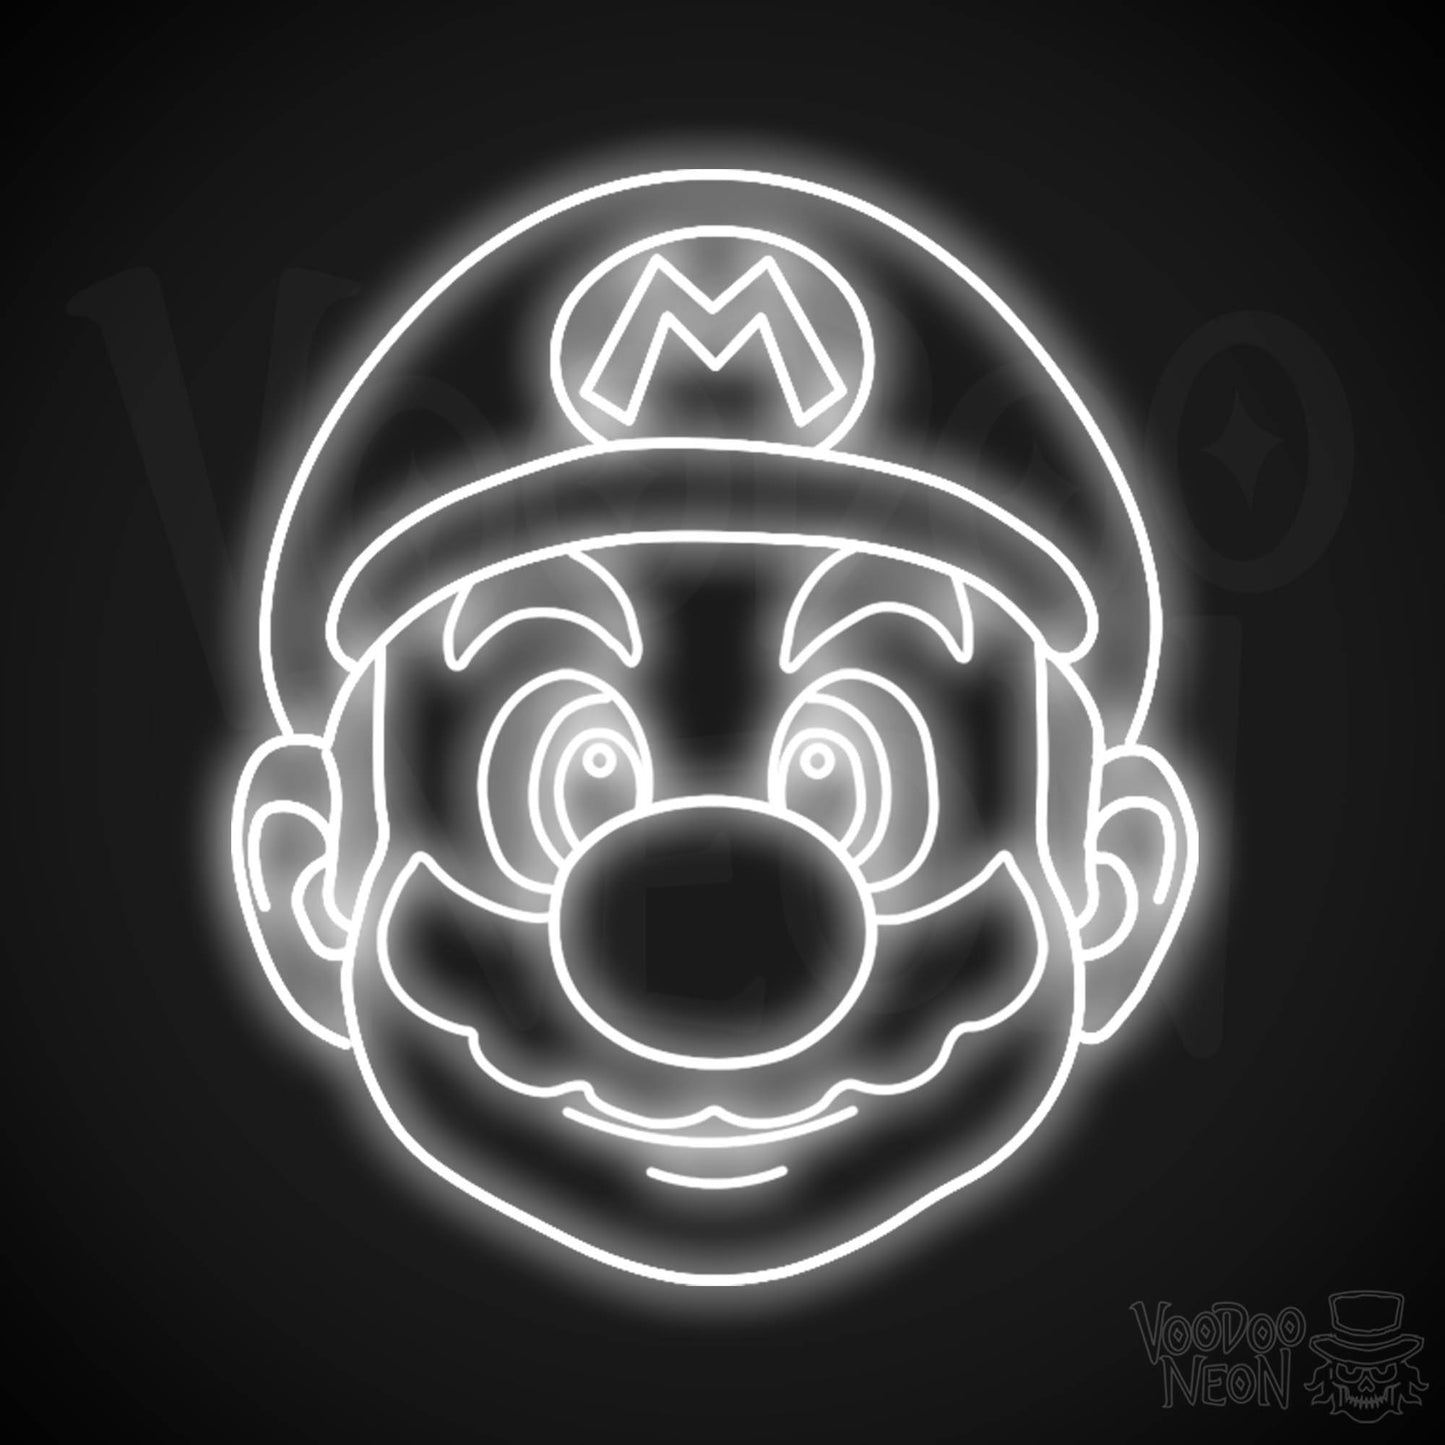 Mario Neon Sign - Mario Sign - Mario Wall Art - LED Neon Wall Art - Color White